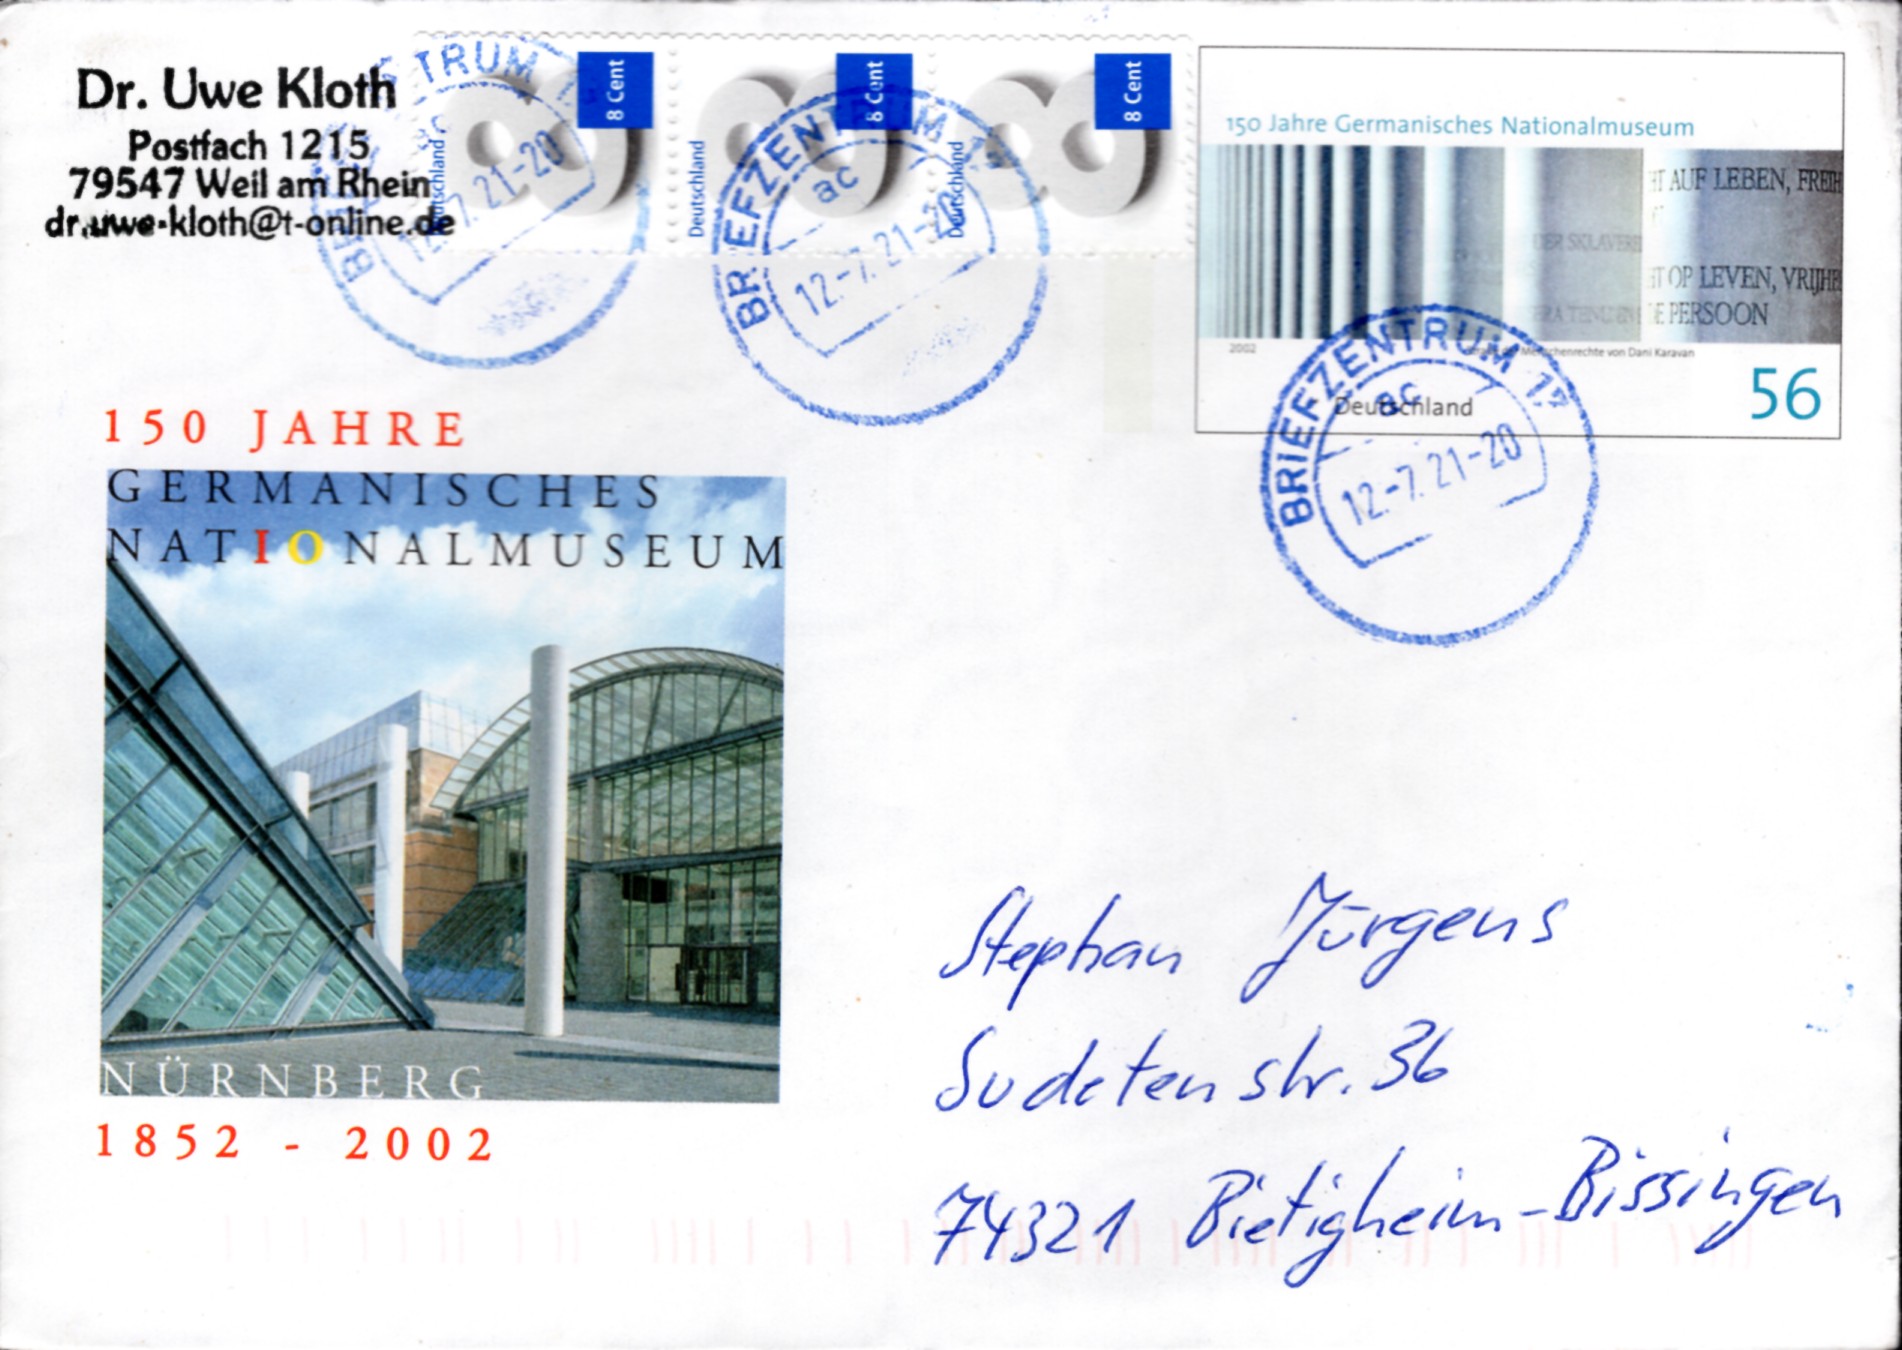 Postal Stationery